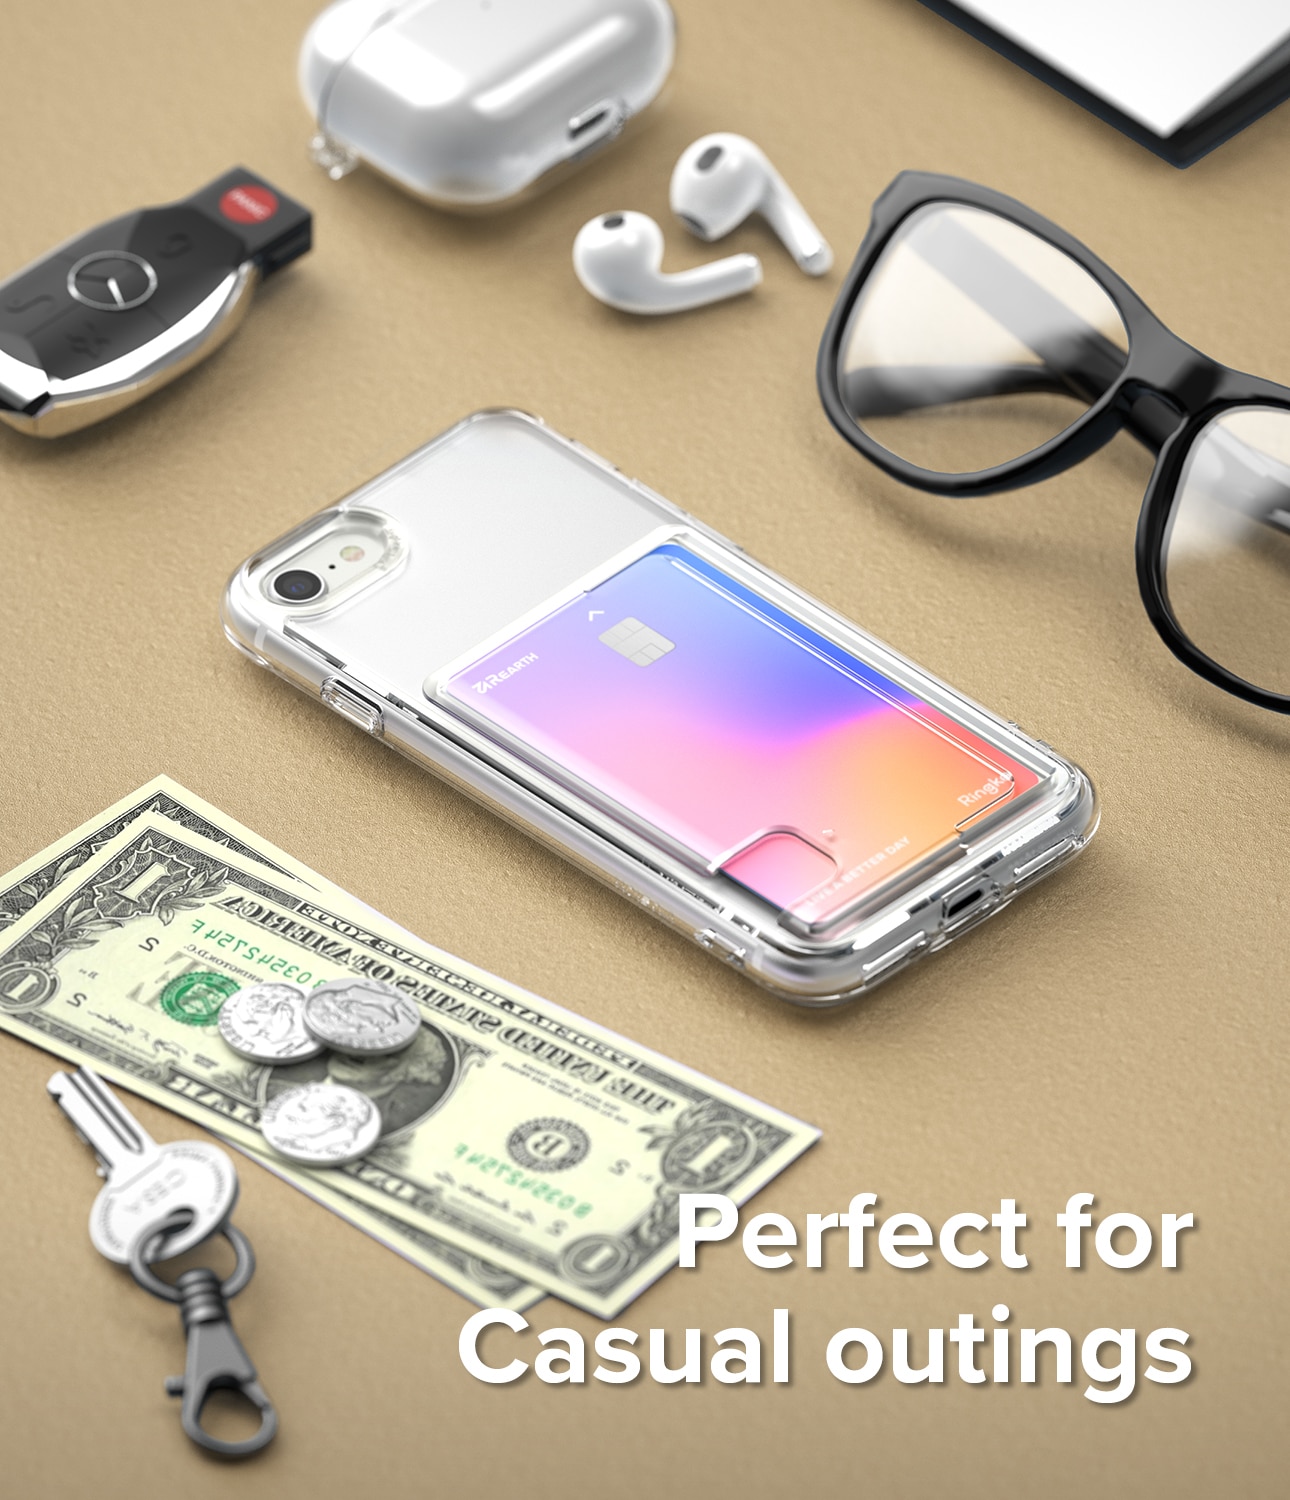 Coque Fusion Card iPhone SE (2020) Transparent